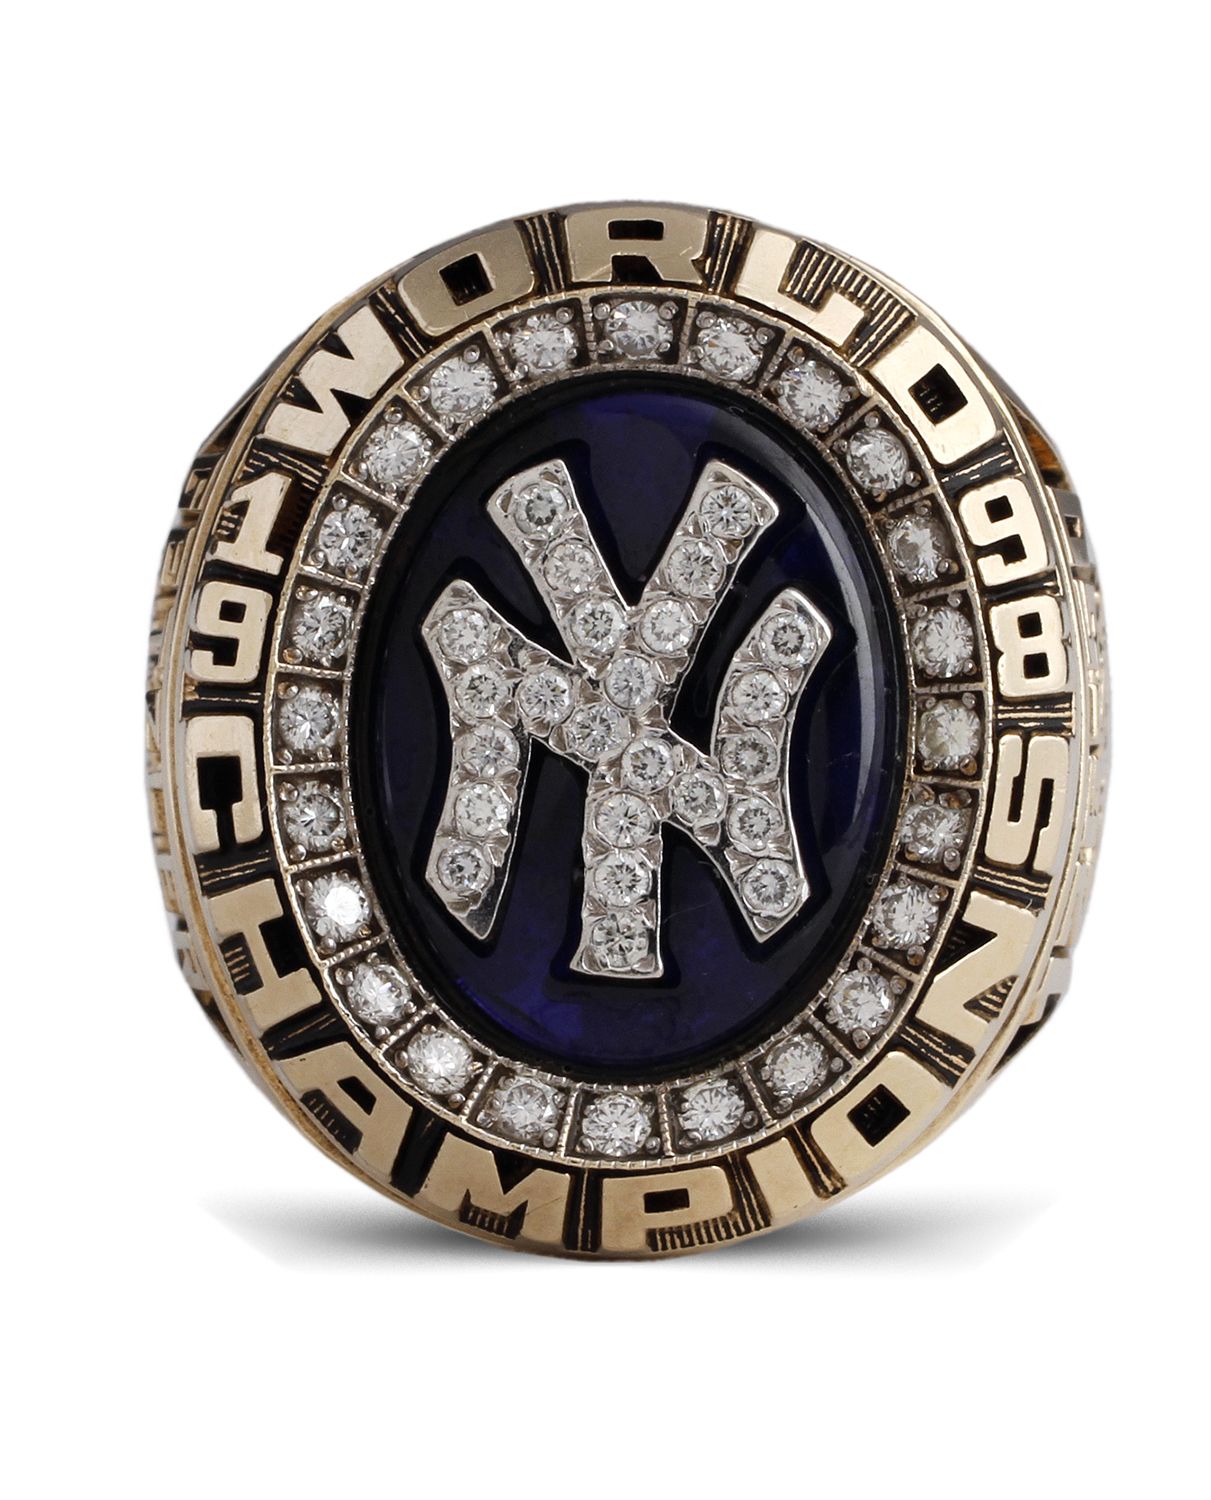 New York Yankees World Series